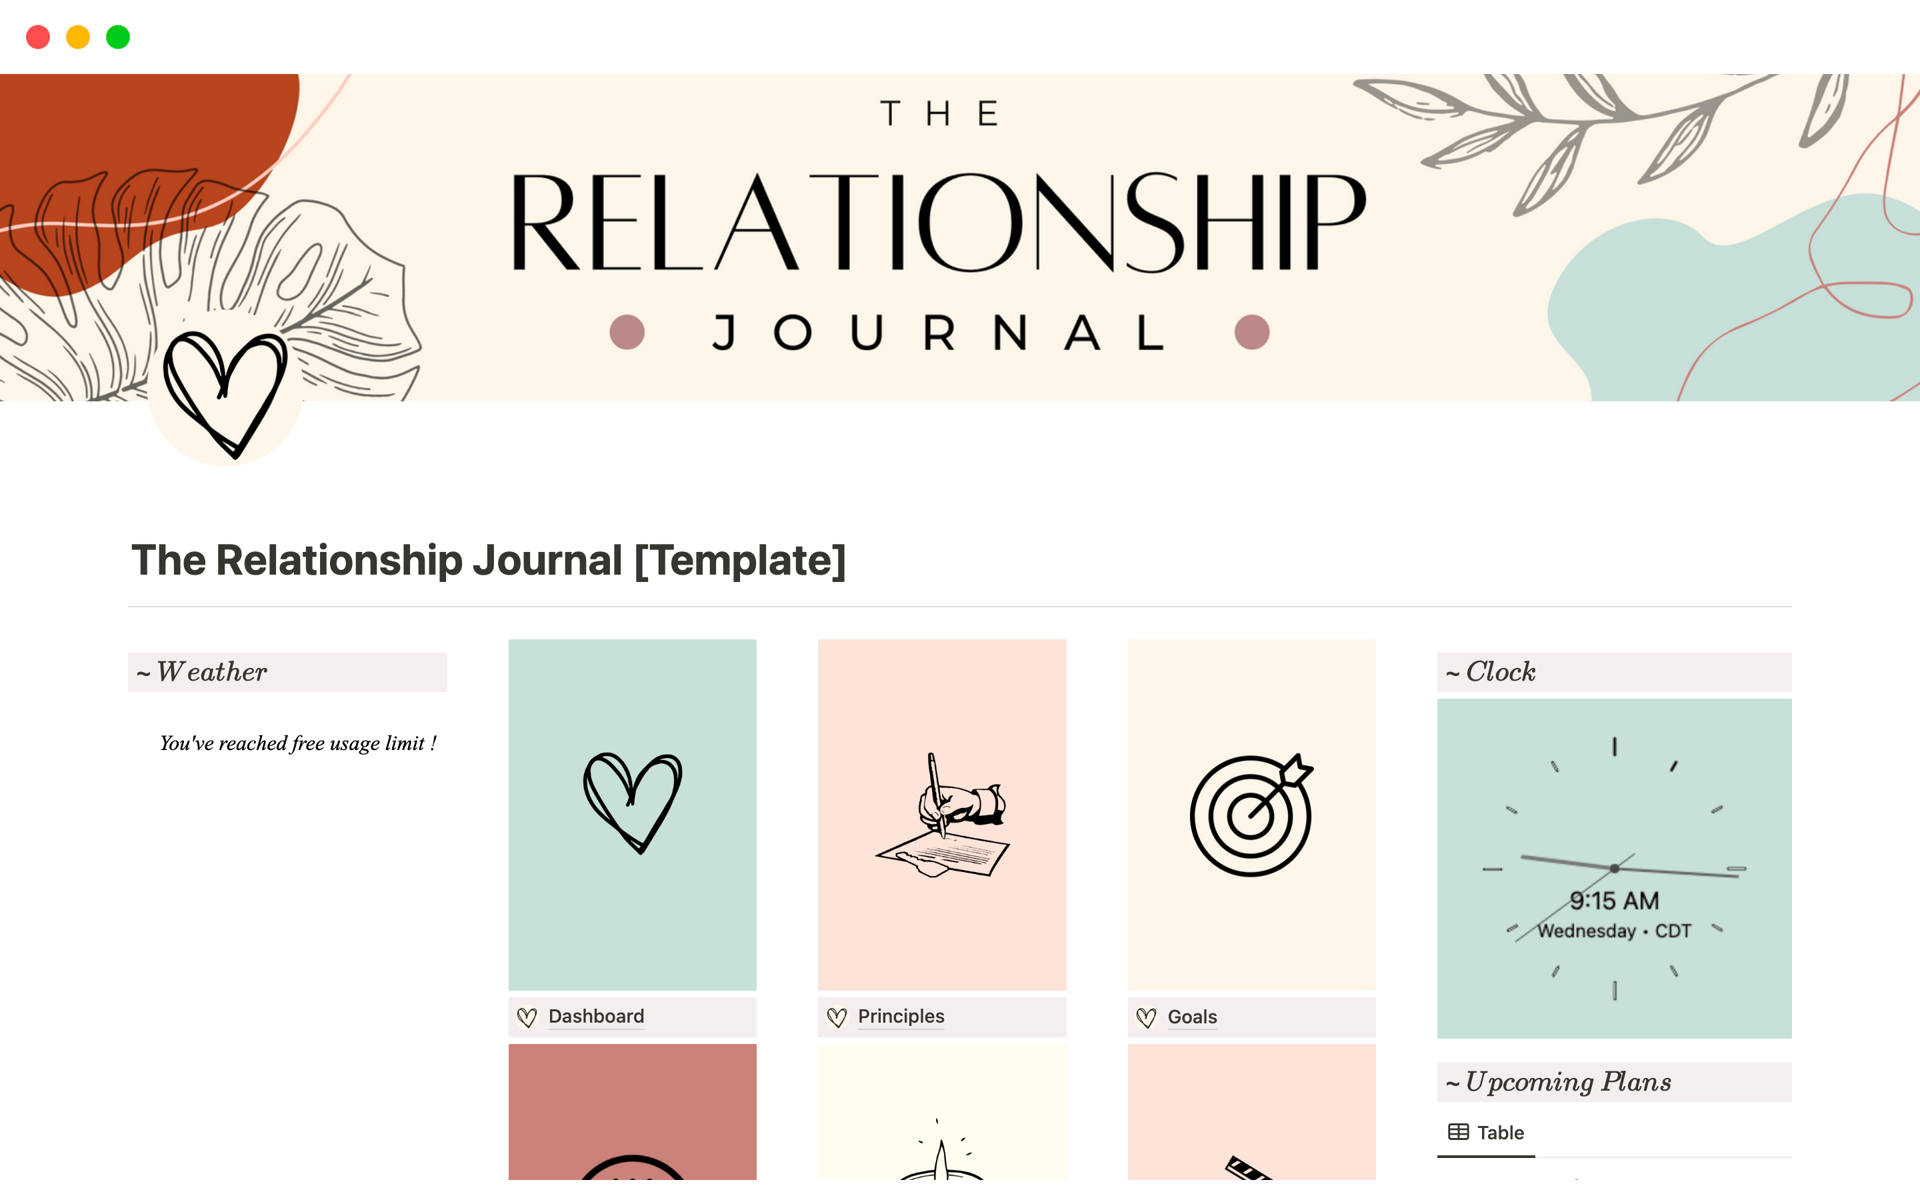 Vista previa de una plantilla para The Relationship Journal